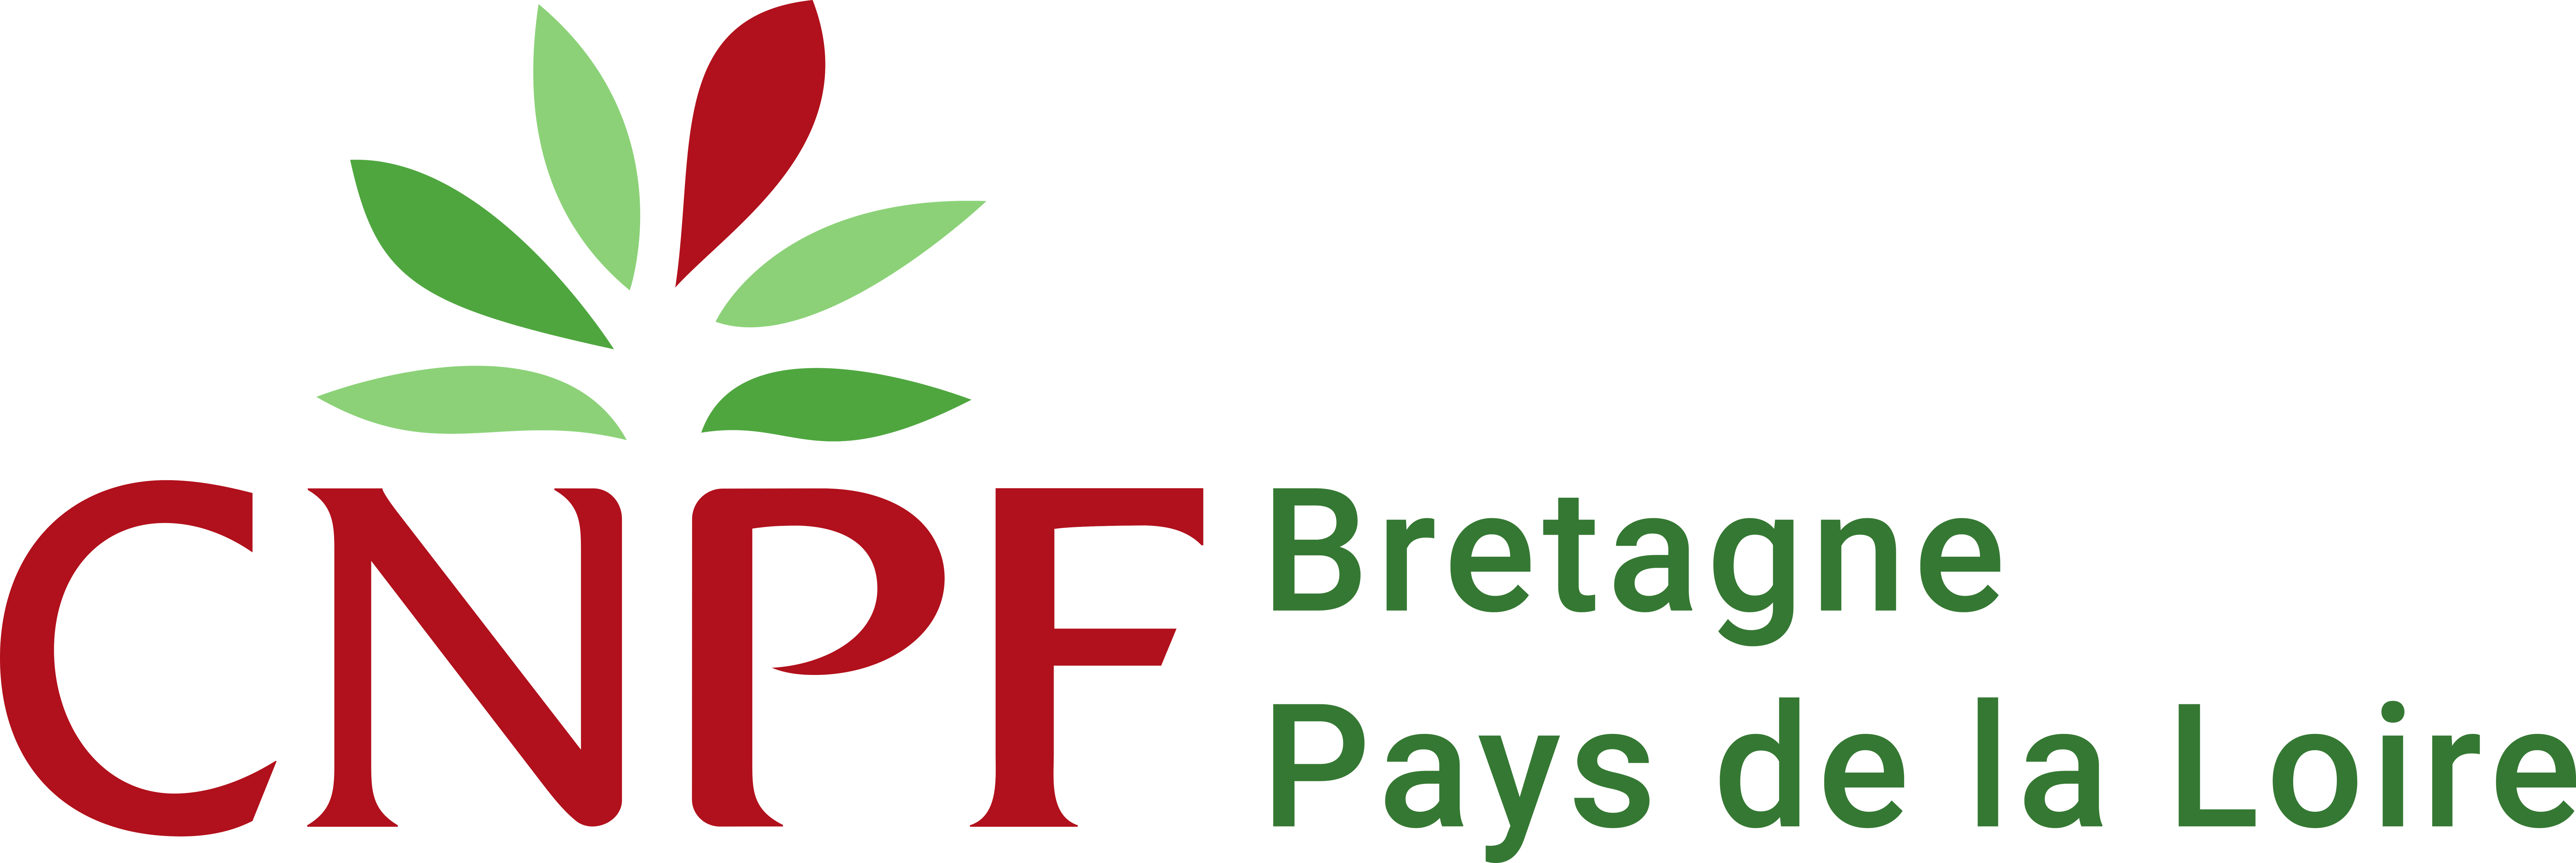 Logo Crpf Bretagne Pays de la Loire